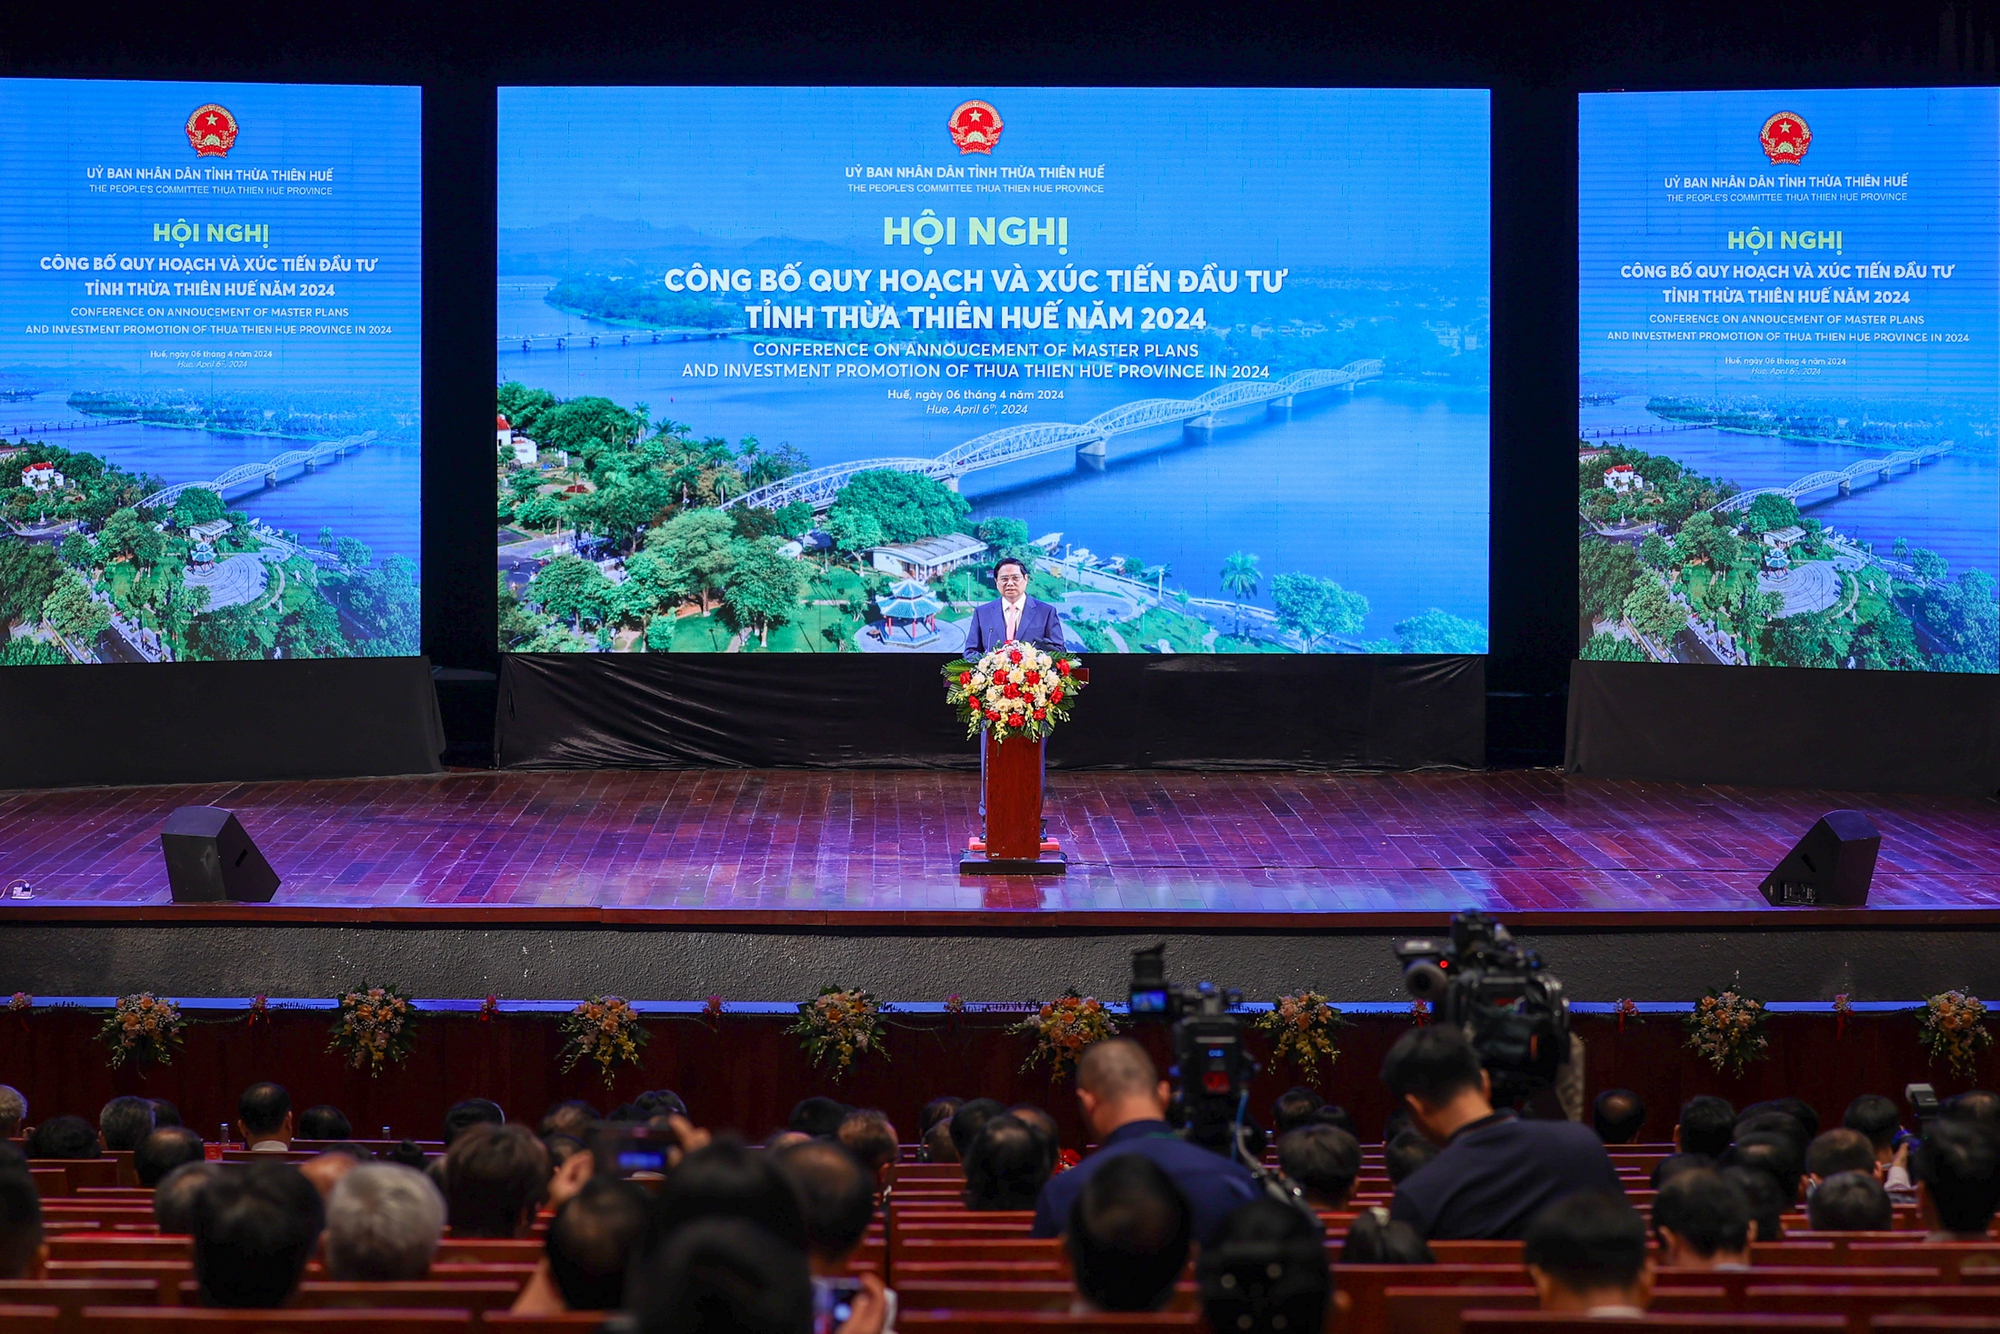 Thủ tướng nhấn mạnh, Thừa Thiên Huế cần chú trọng, tập trung thực hiện ""1 trọng tâm, 2 tăng cường, 3 đẩy mạnh" khi triển khai các quy hoạch - Ảnh: VGP/Nhật Bắc